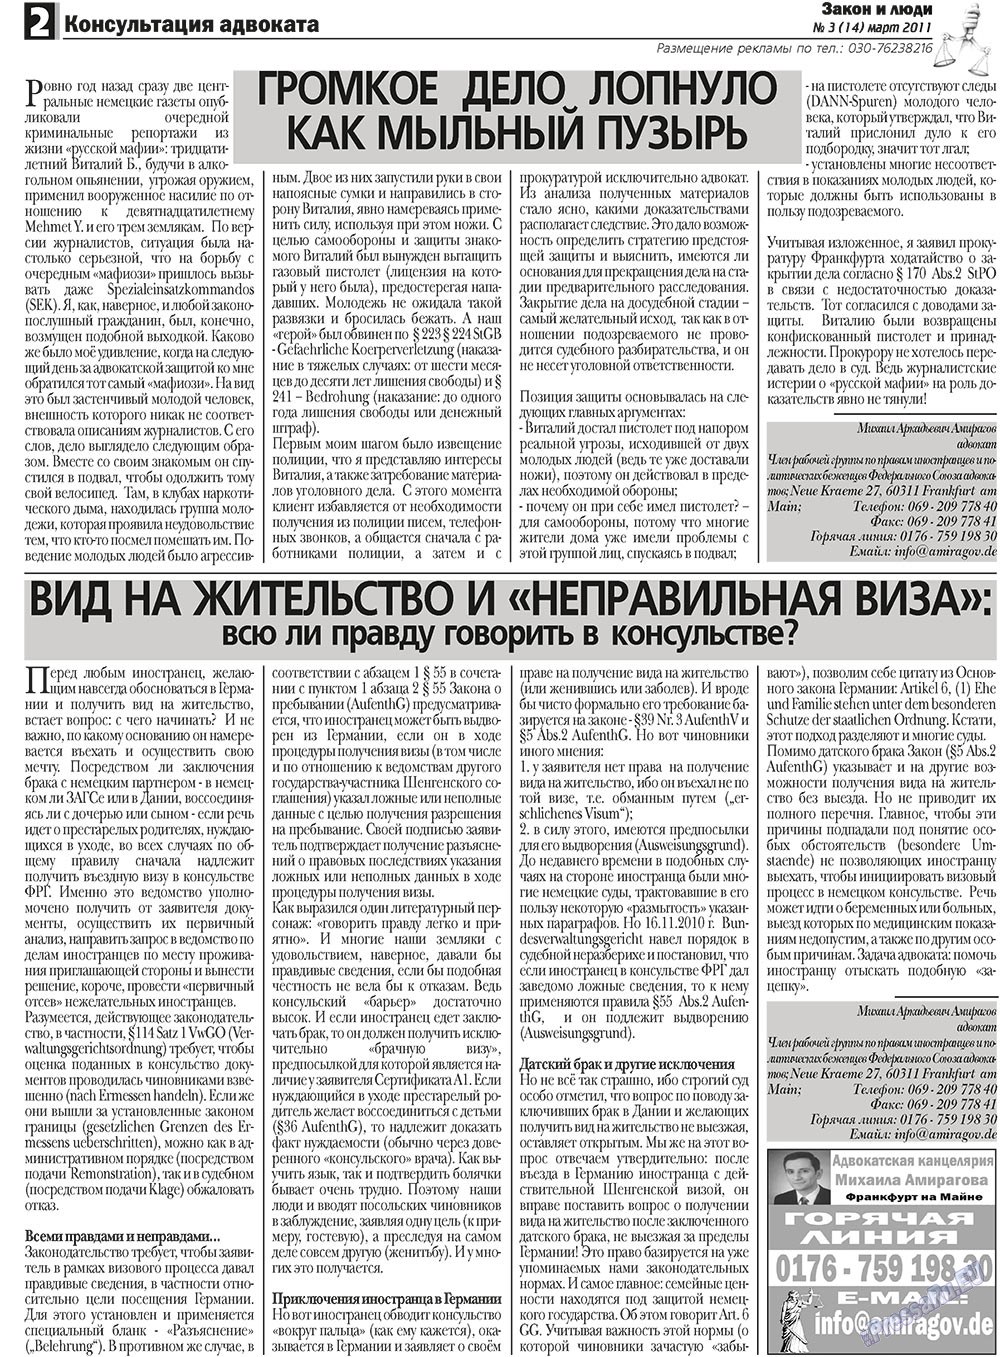 Закон и люди, газета. 2011 №3 стр.2